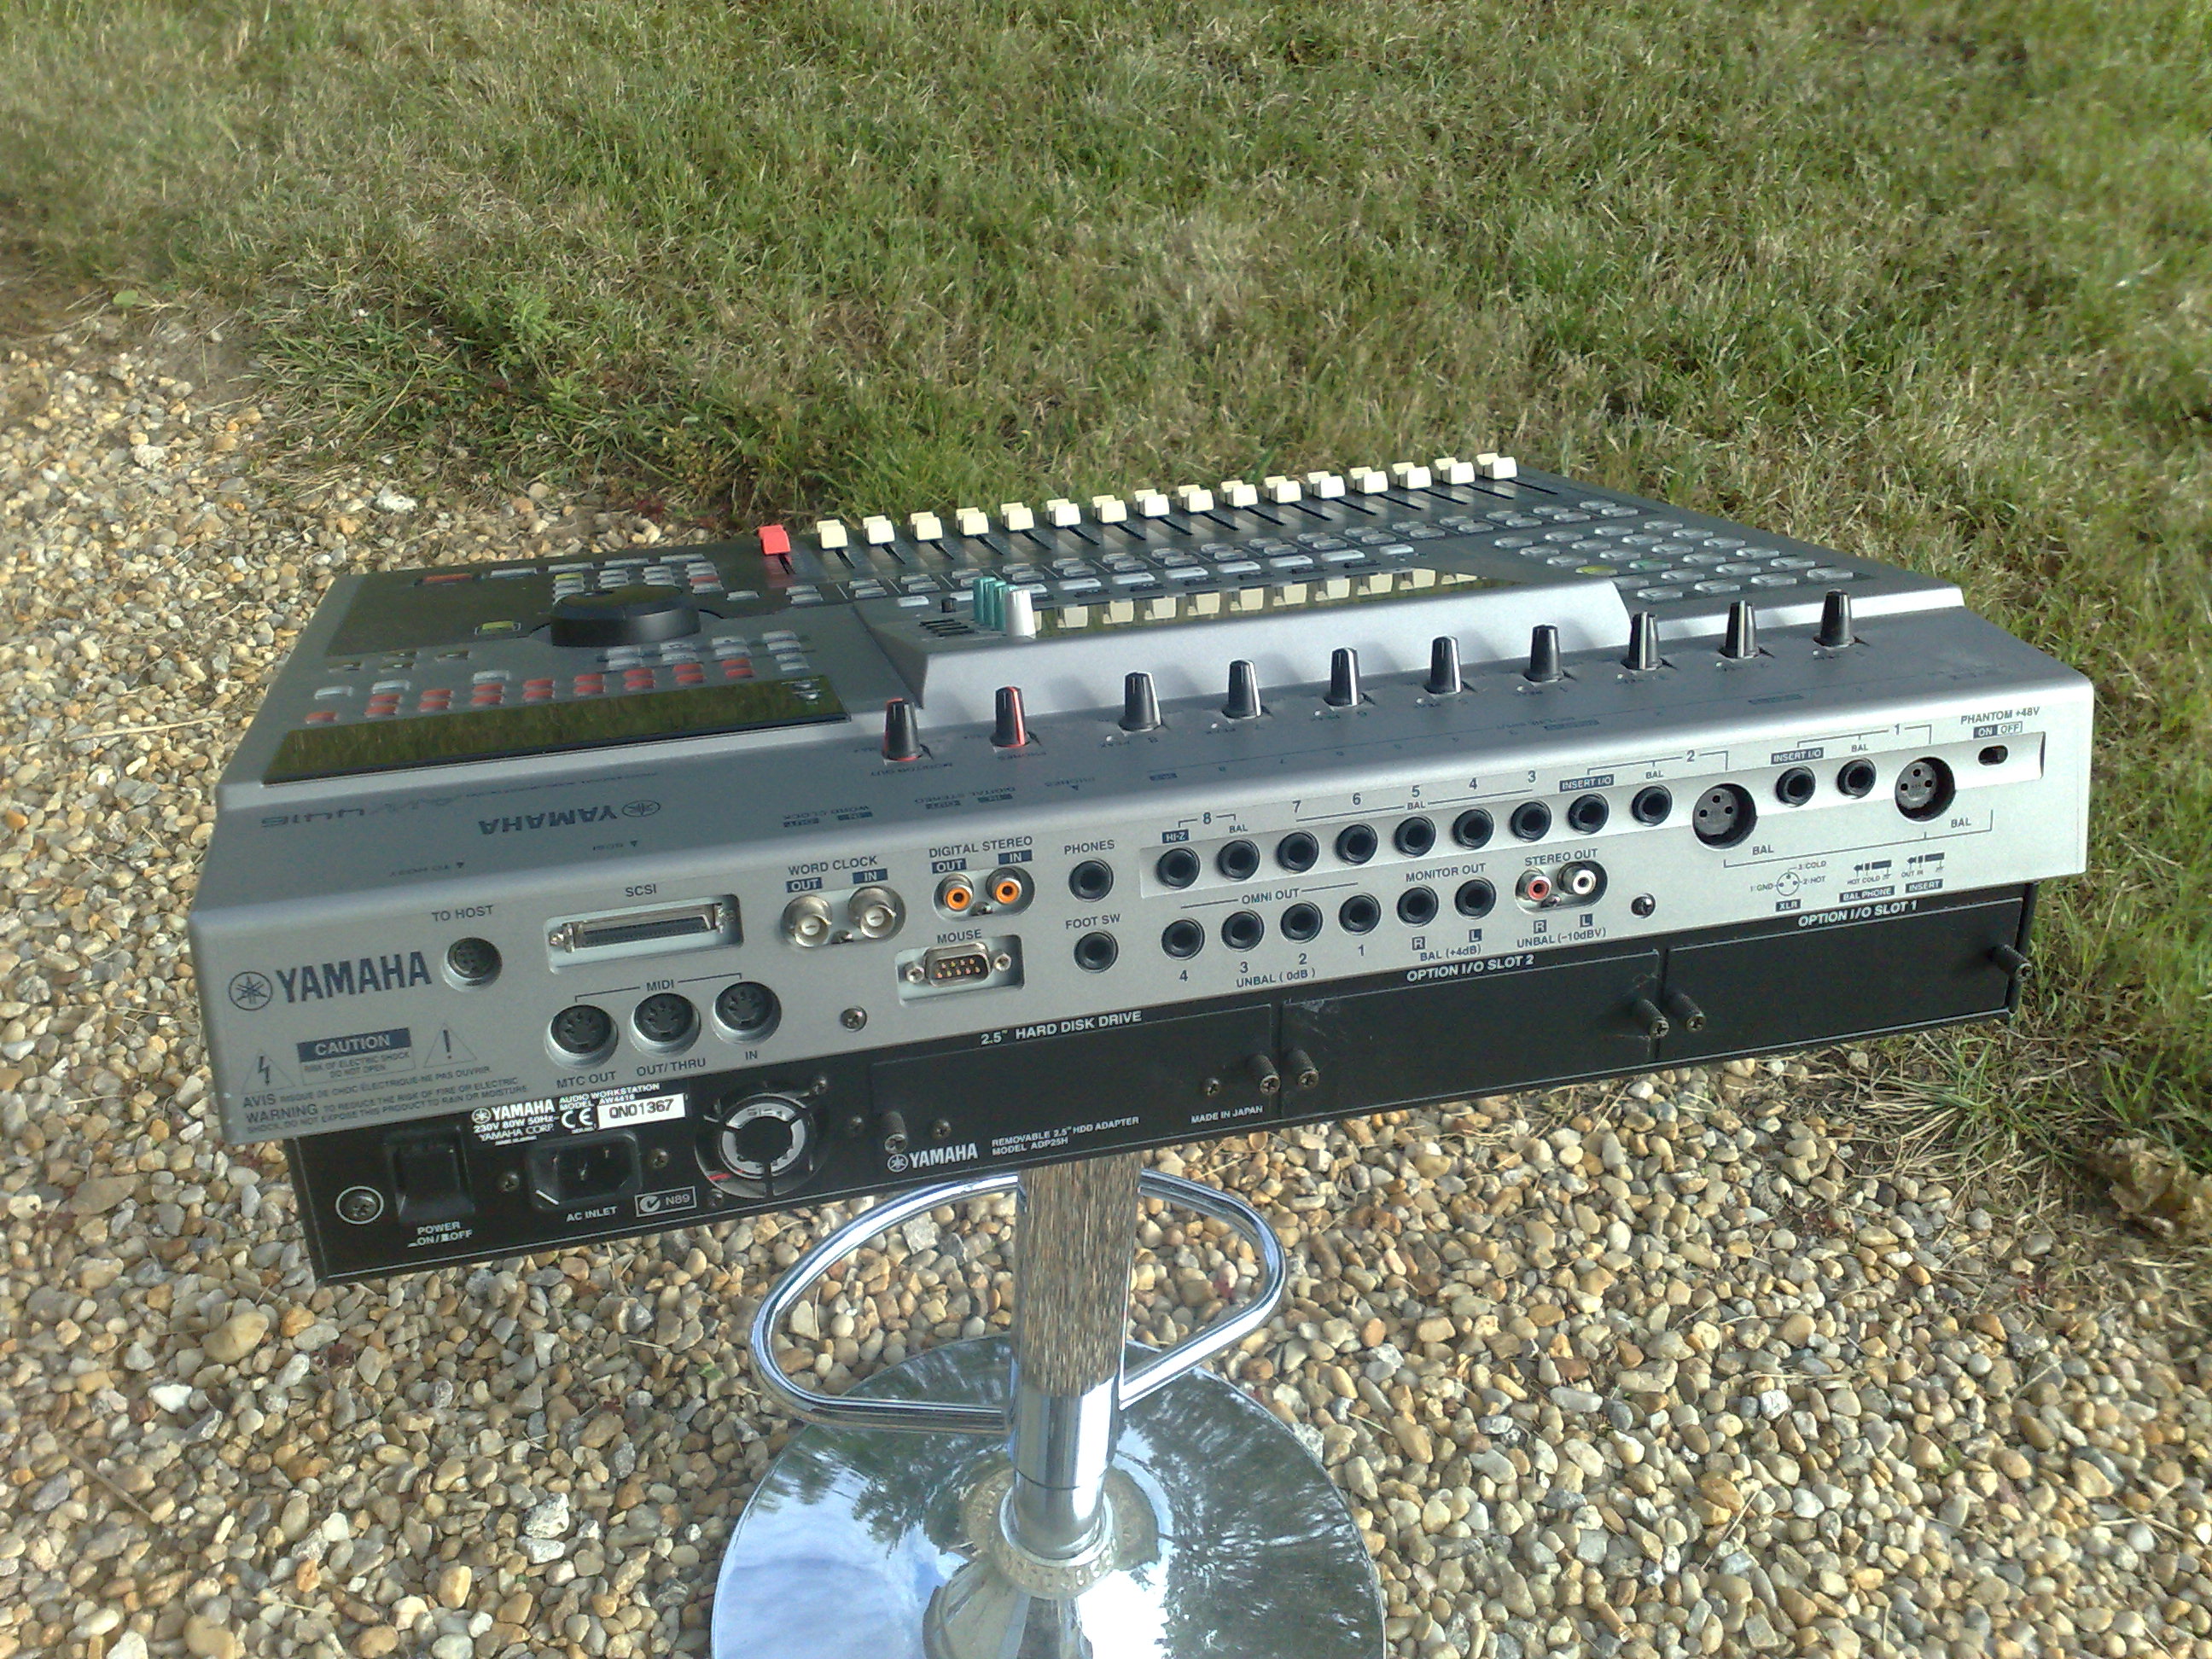 Yamaha aw4416 professional audio workstation